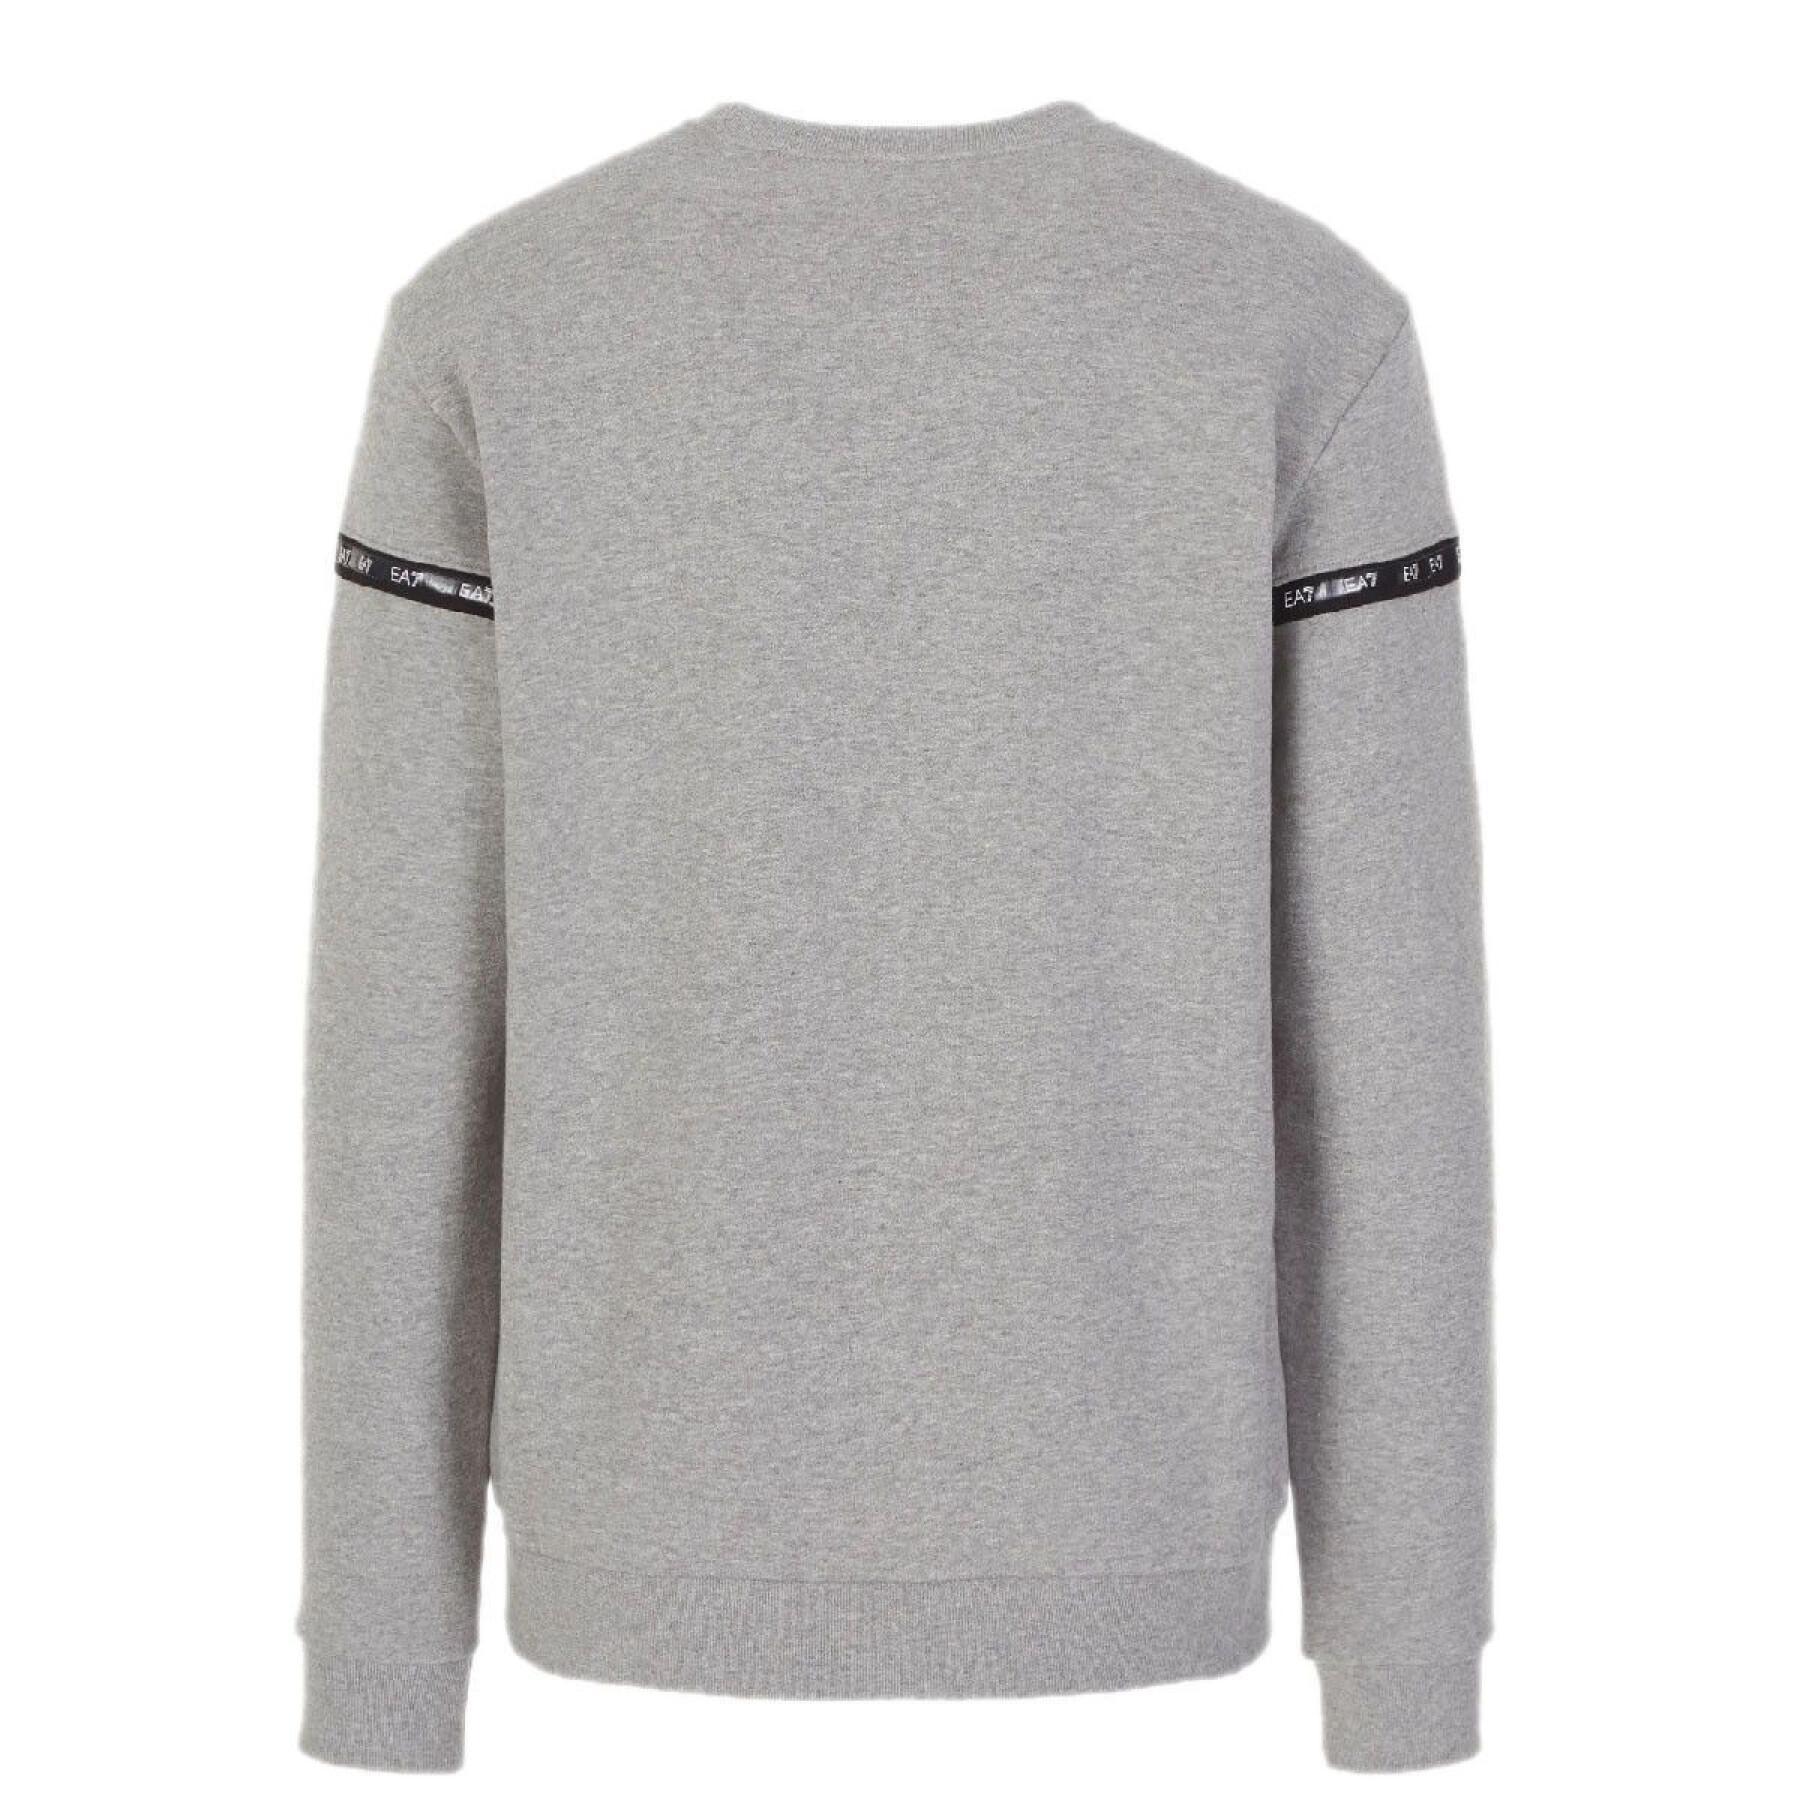 Sweatshirt pescoço redondo EA7 Emporio Armani 6KPM63-PJ07Z gris